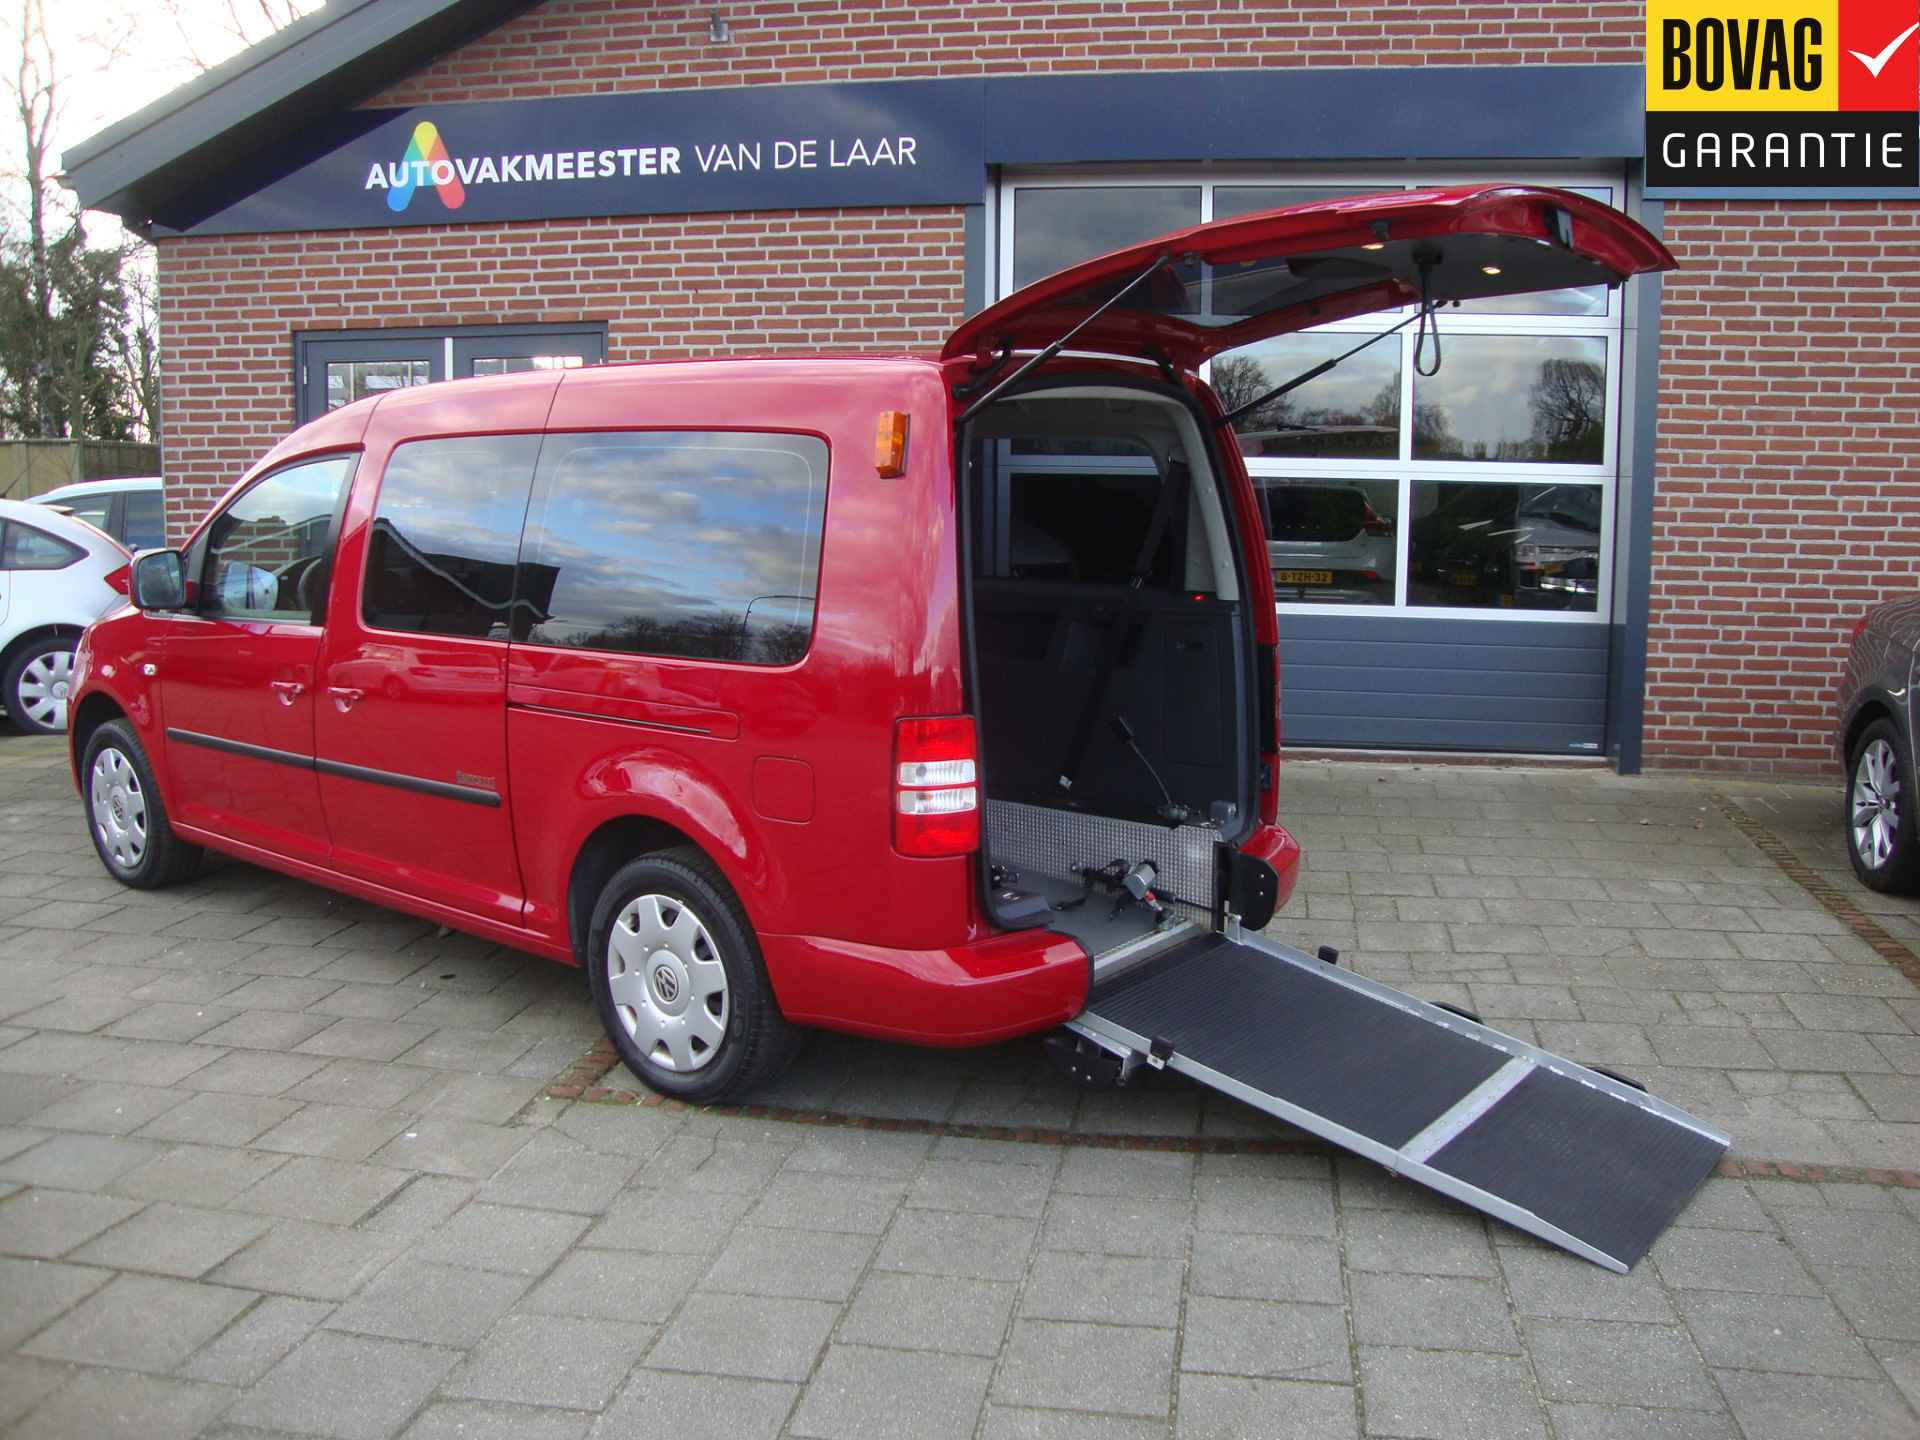 Volkswagen Caddy Maxi 1.2 TSI Trendline Rolstoel / Invalide , 5 pers + 1 rolstoelplaats( Airco,Cruise Control) RIJKLAARPRIJS! - 1/47